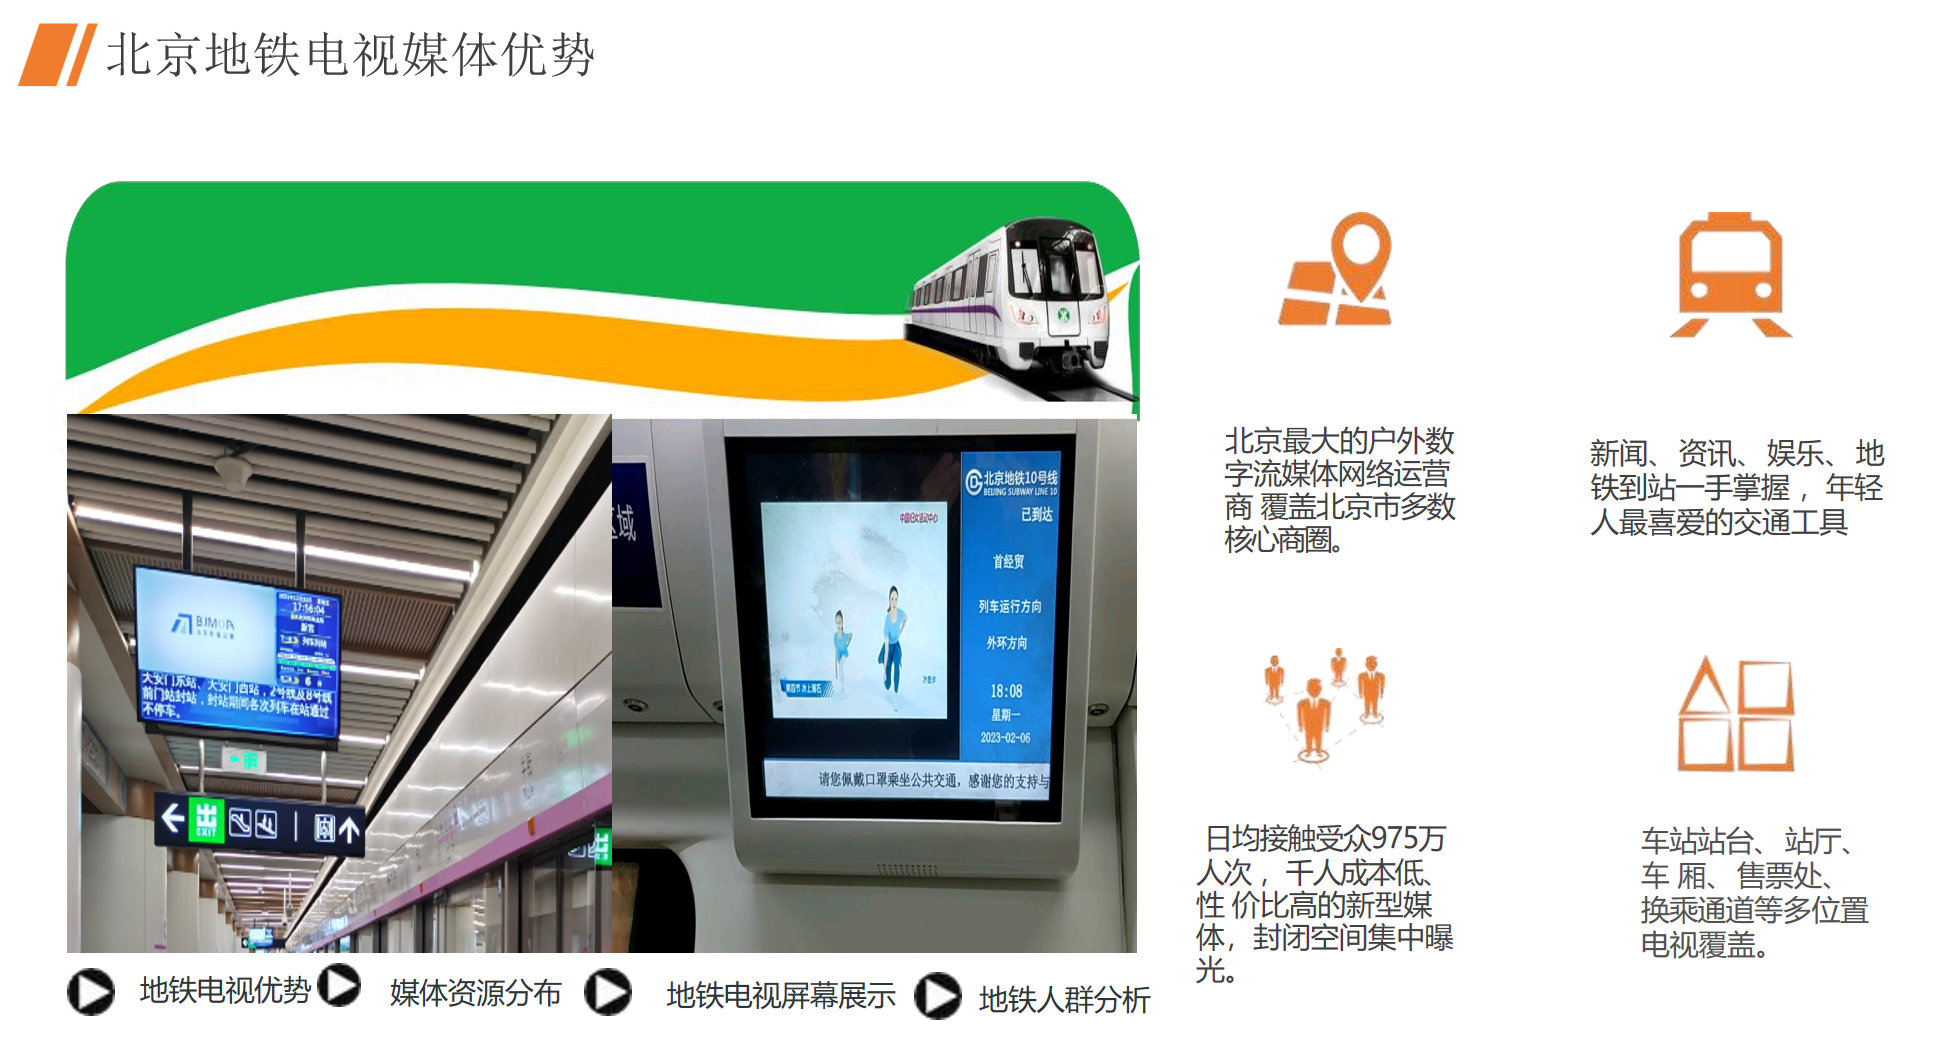 北京北京地铁1/2/13号线地铁轻轨媒体广告机/电视机